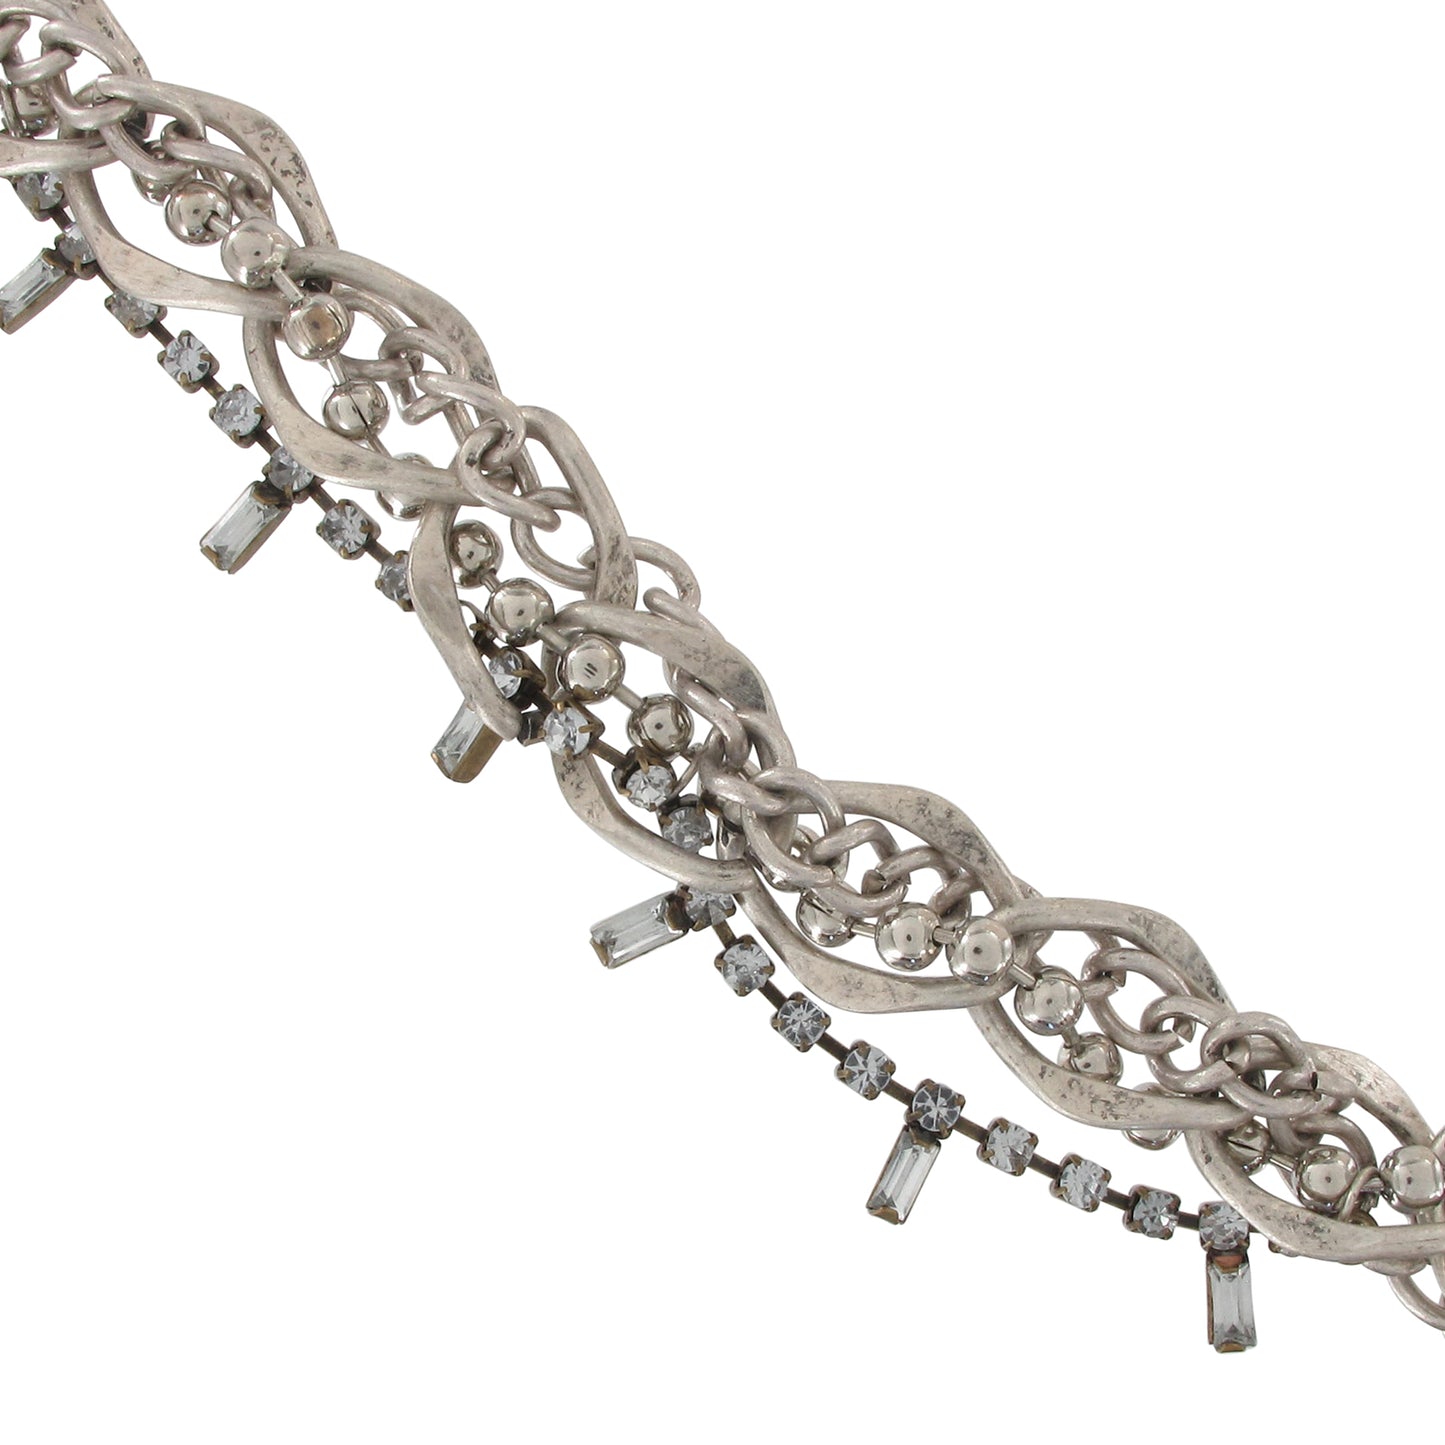 Multistrand Necklace Chain Gold Silver Tone Rhinestone 16 - 18"